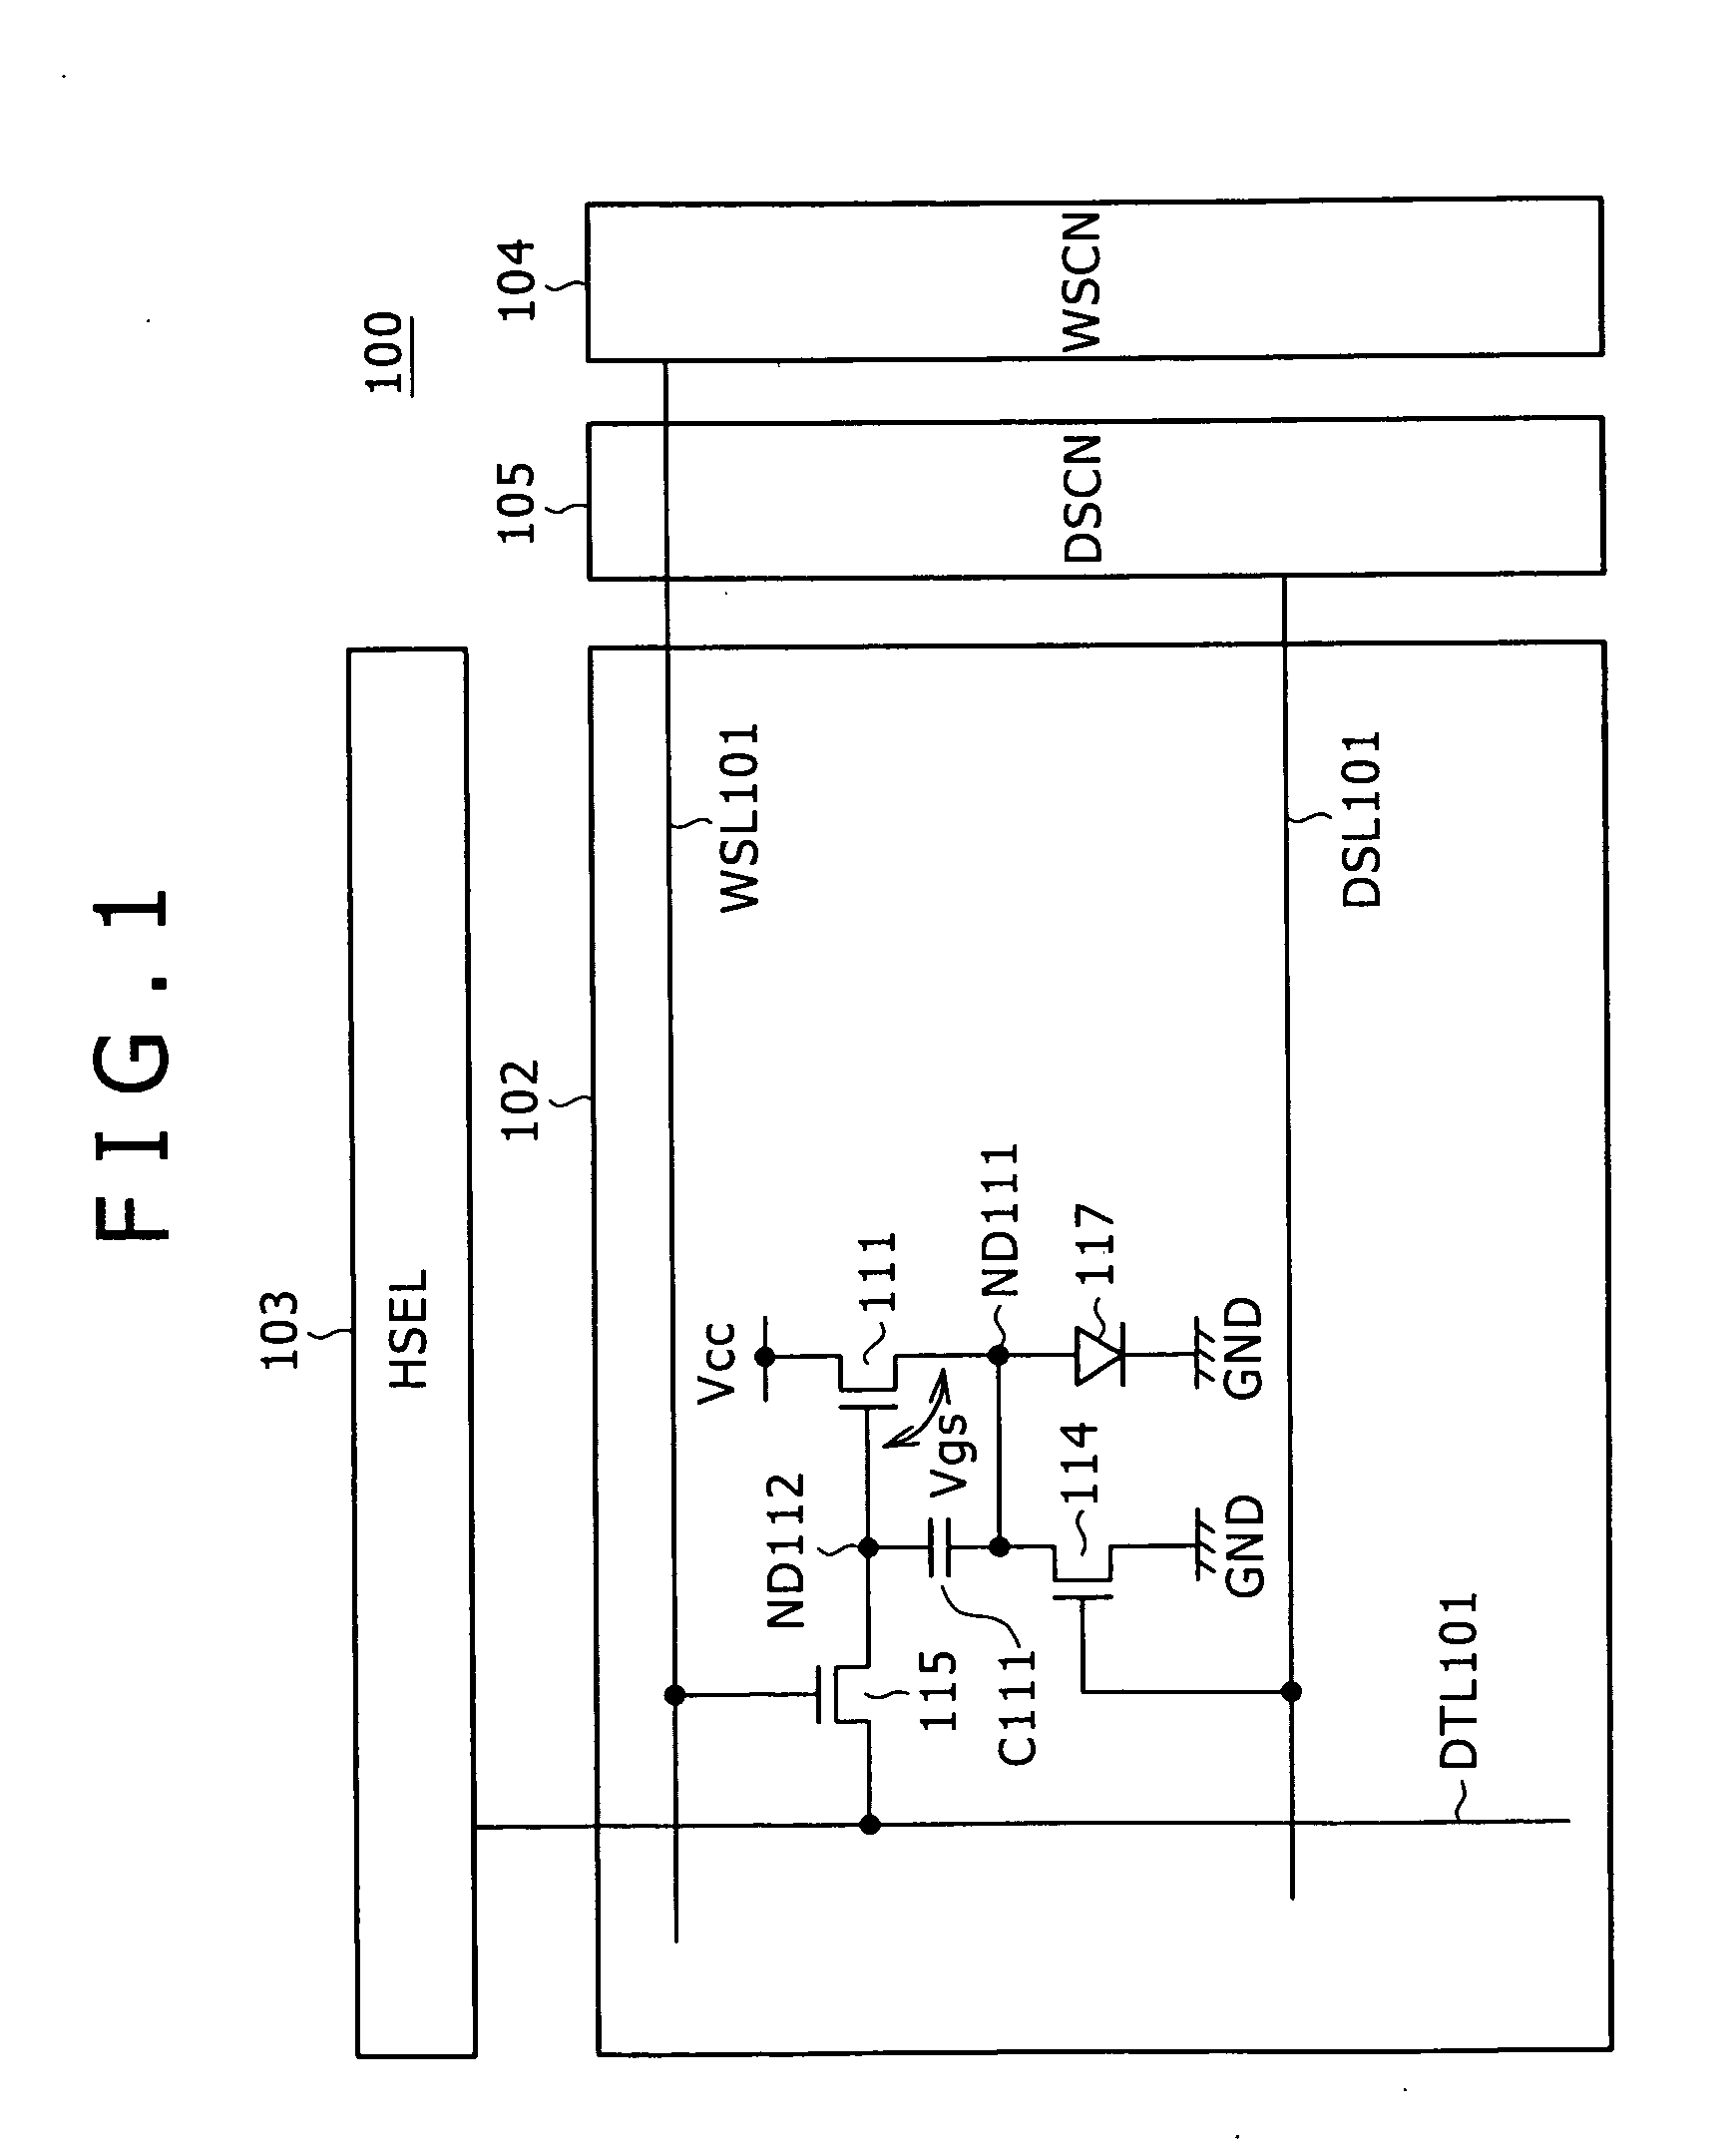 Pixel circuit, active matrix apparatus and display apparatus